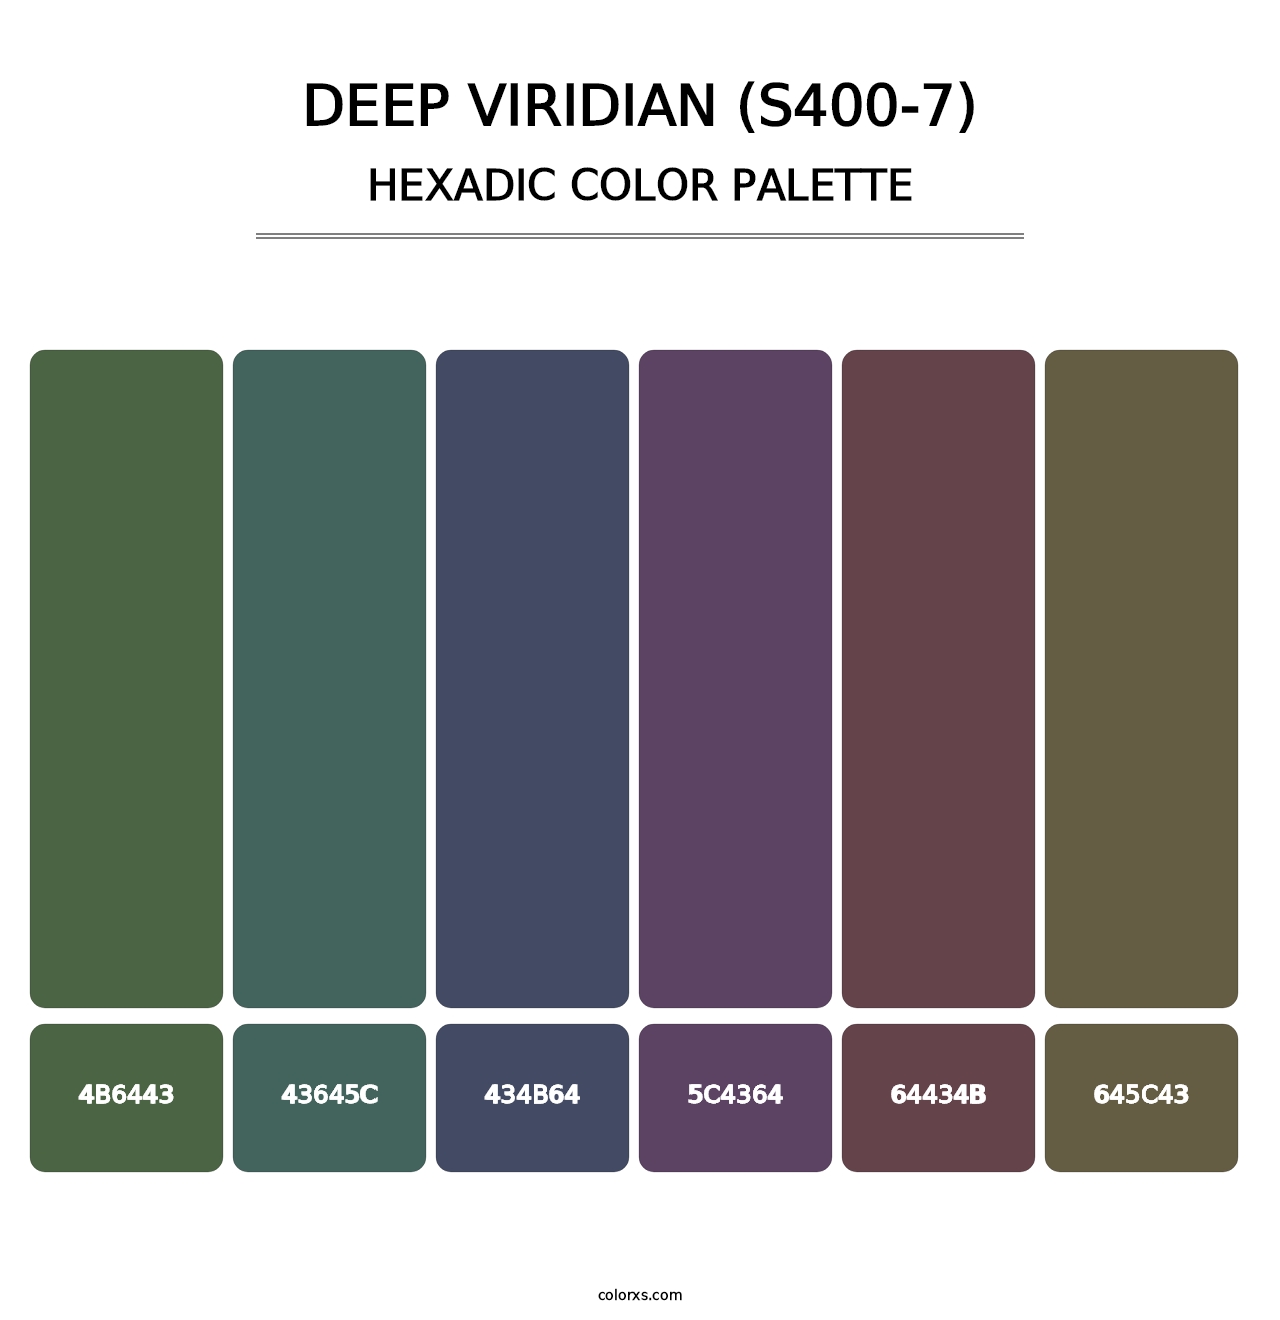 Deep Viridian (S400-7) - Hexadic Color Palette